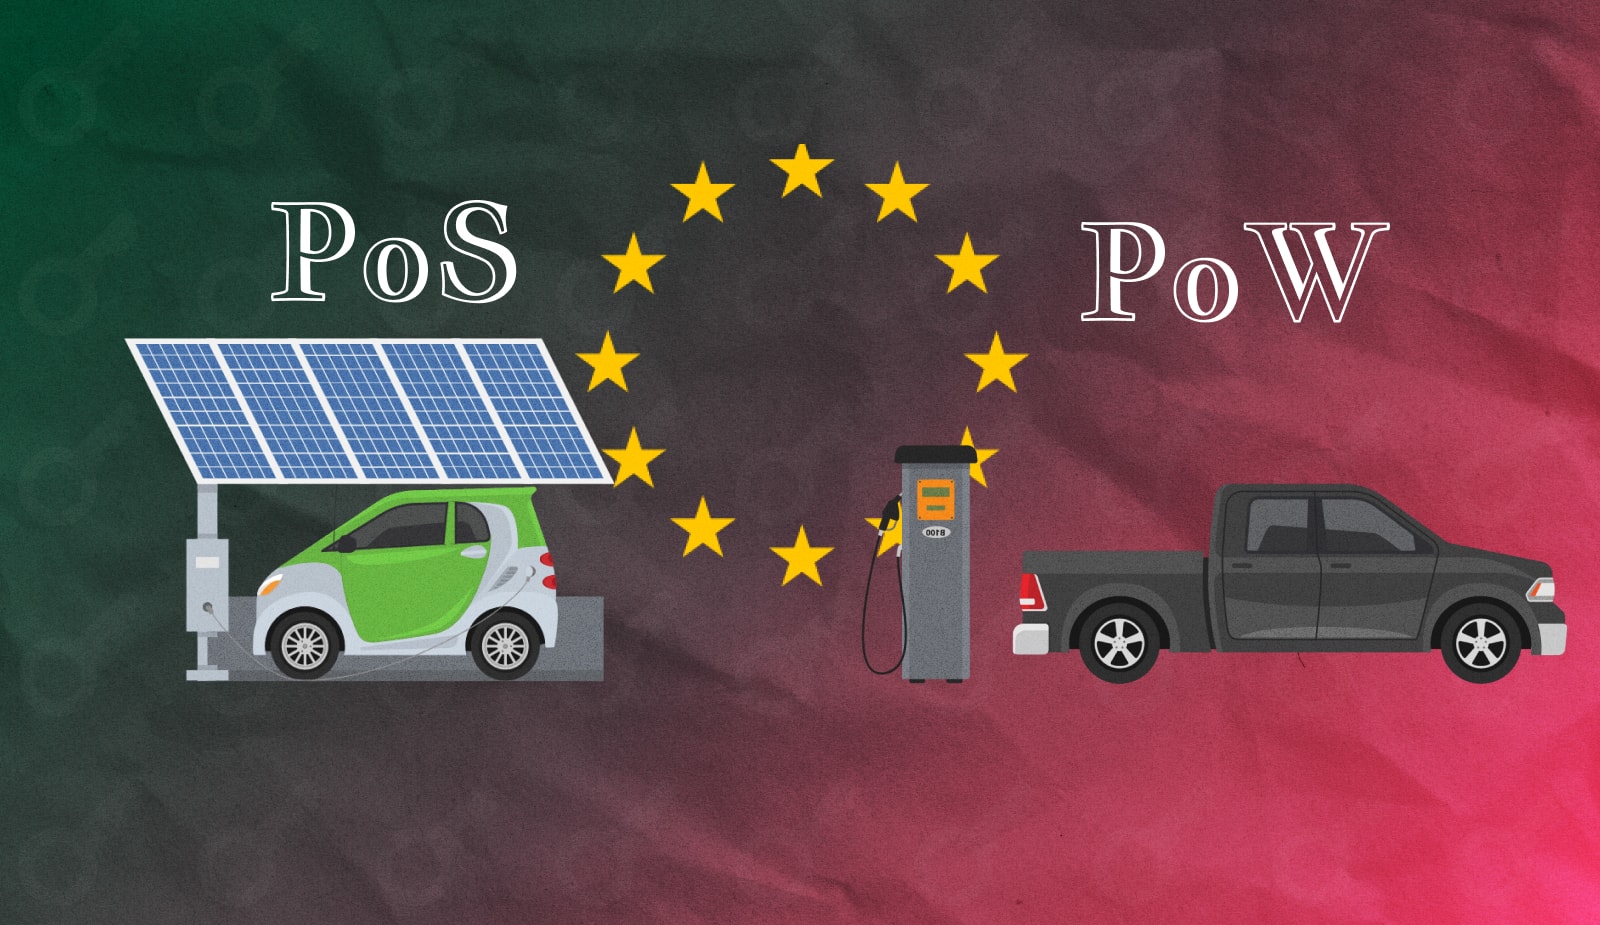 ЕЦБ: “PoW-блокчейны можно сравнить с машинами на бензине, тогда как PoS-аналоги – это электрокары”. Заглавный коллаж новости.